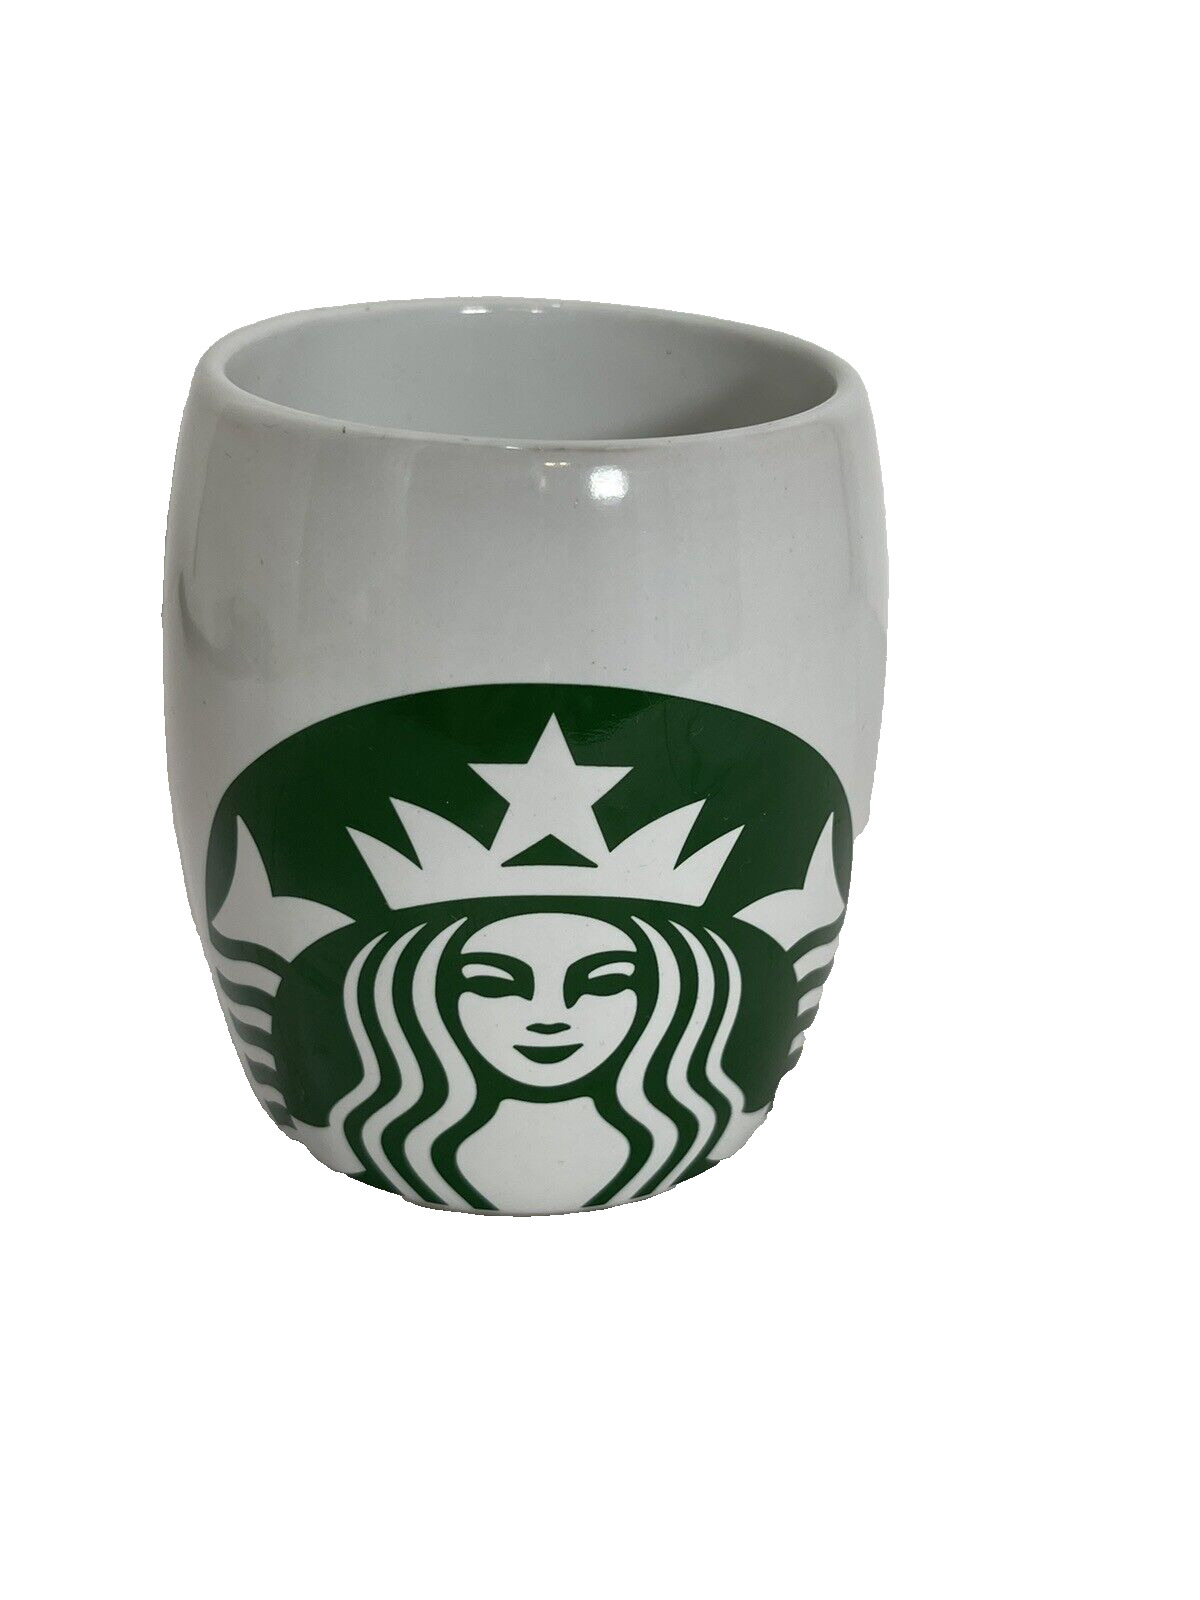 Starbucks 2012 Barrel Coffee Mug Seattle, WA